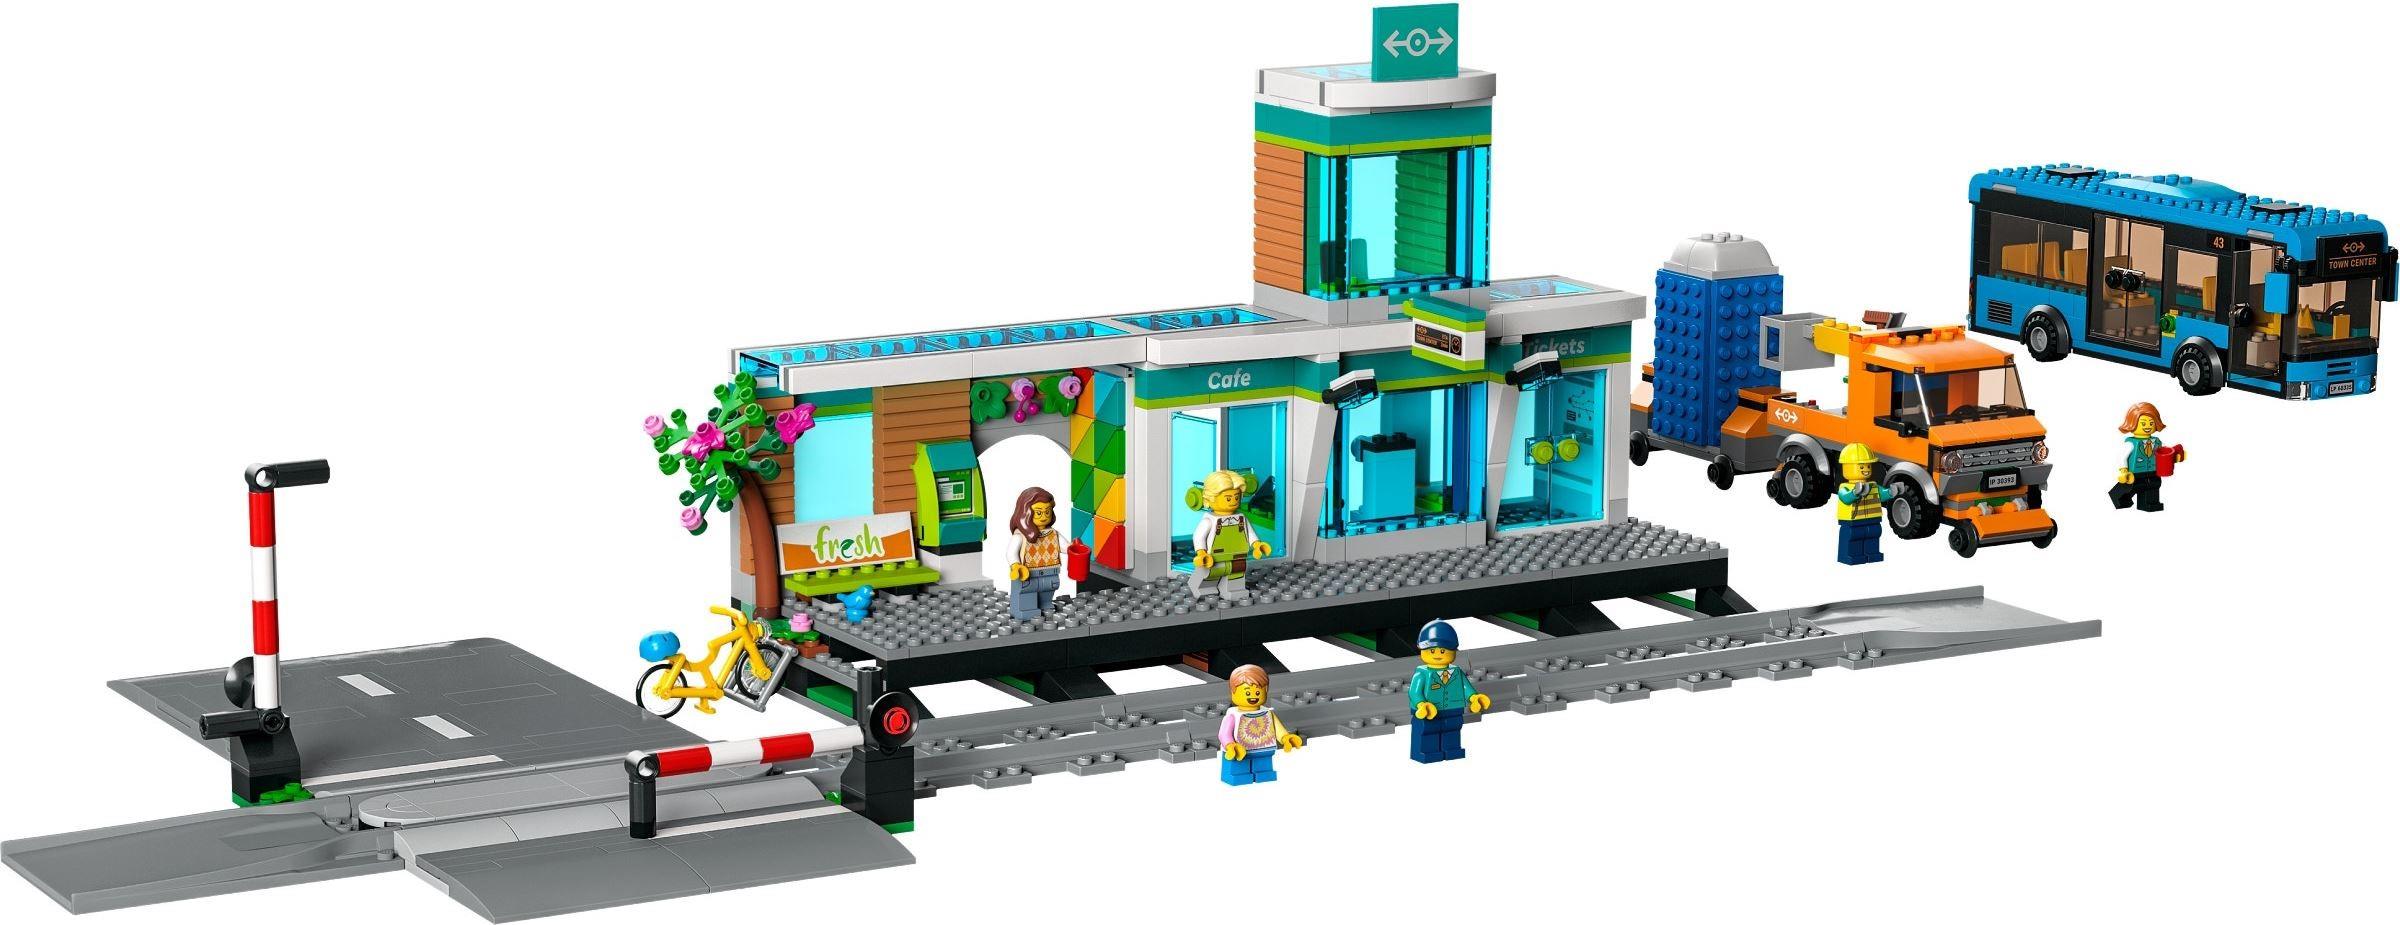 LEGO Station | BrickEconomy